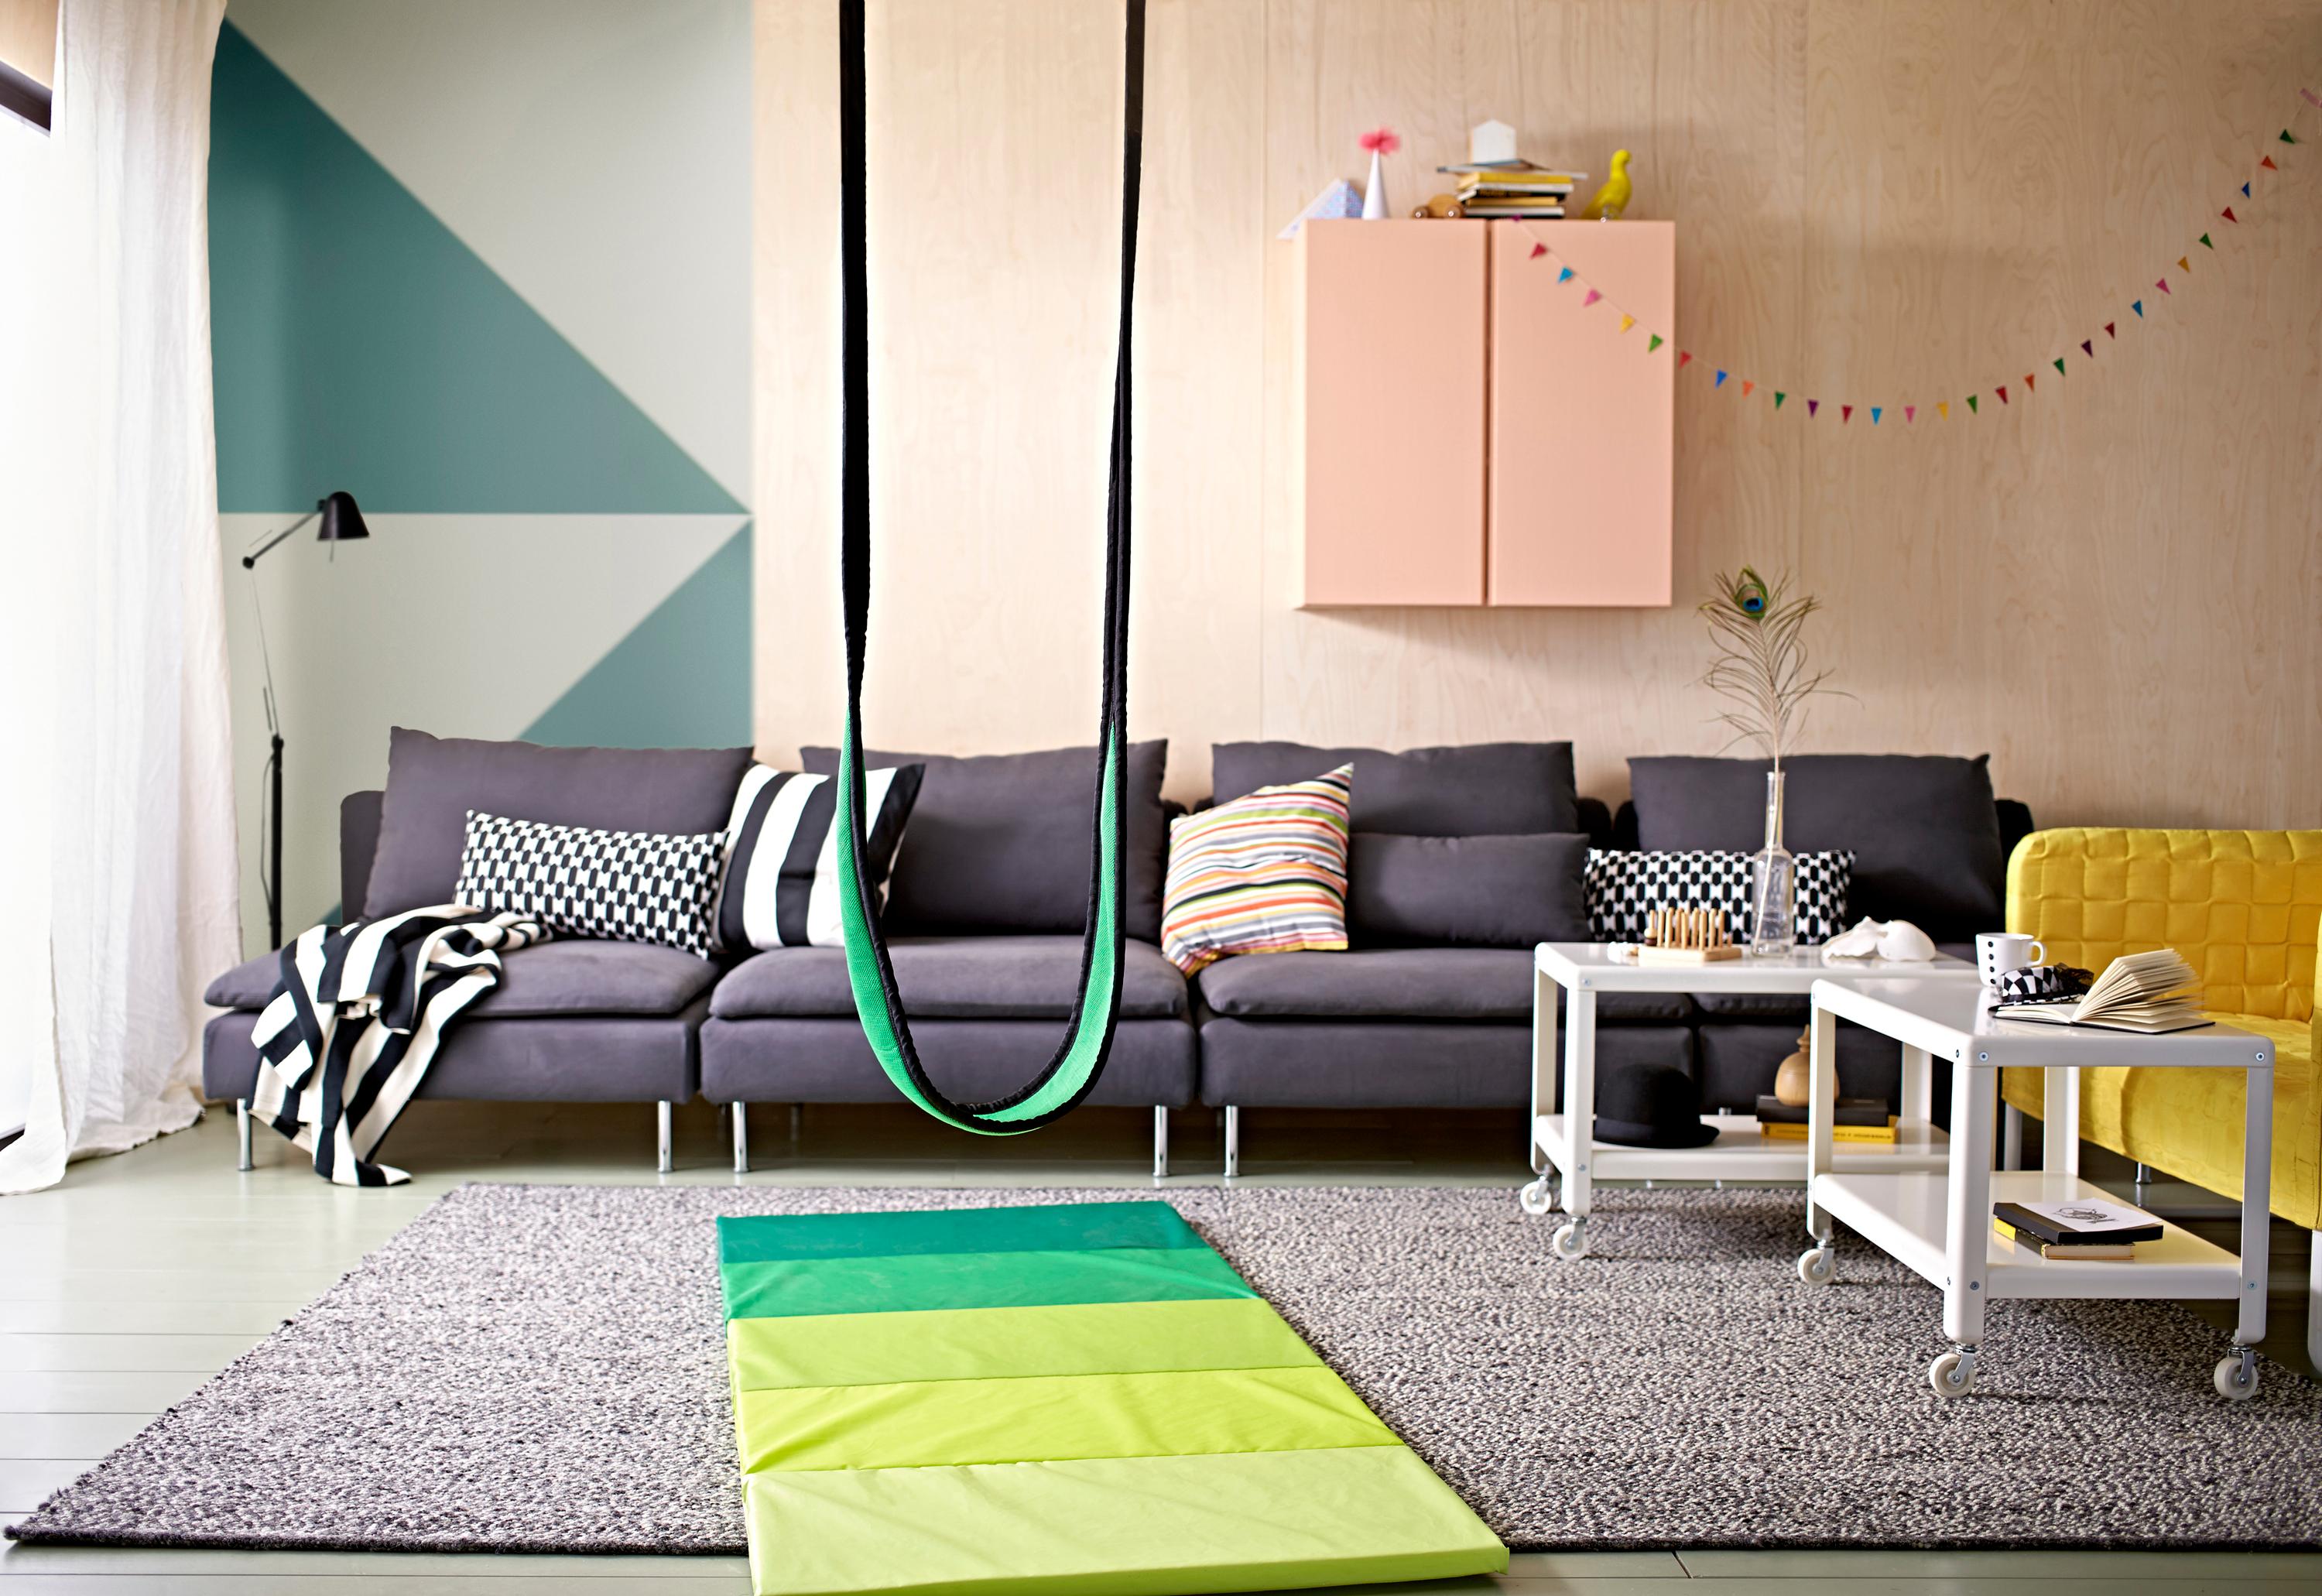 Schaukel im Wohnzimmer #couchtisch #teppich #hängeschrank #ikea #sofa #grauessofa #weißercouchtisch #schaukel #gelbessofa #grüntapete ©Inter IKEA Systems B.V.